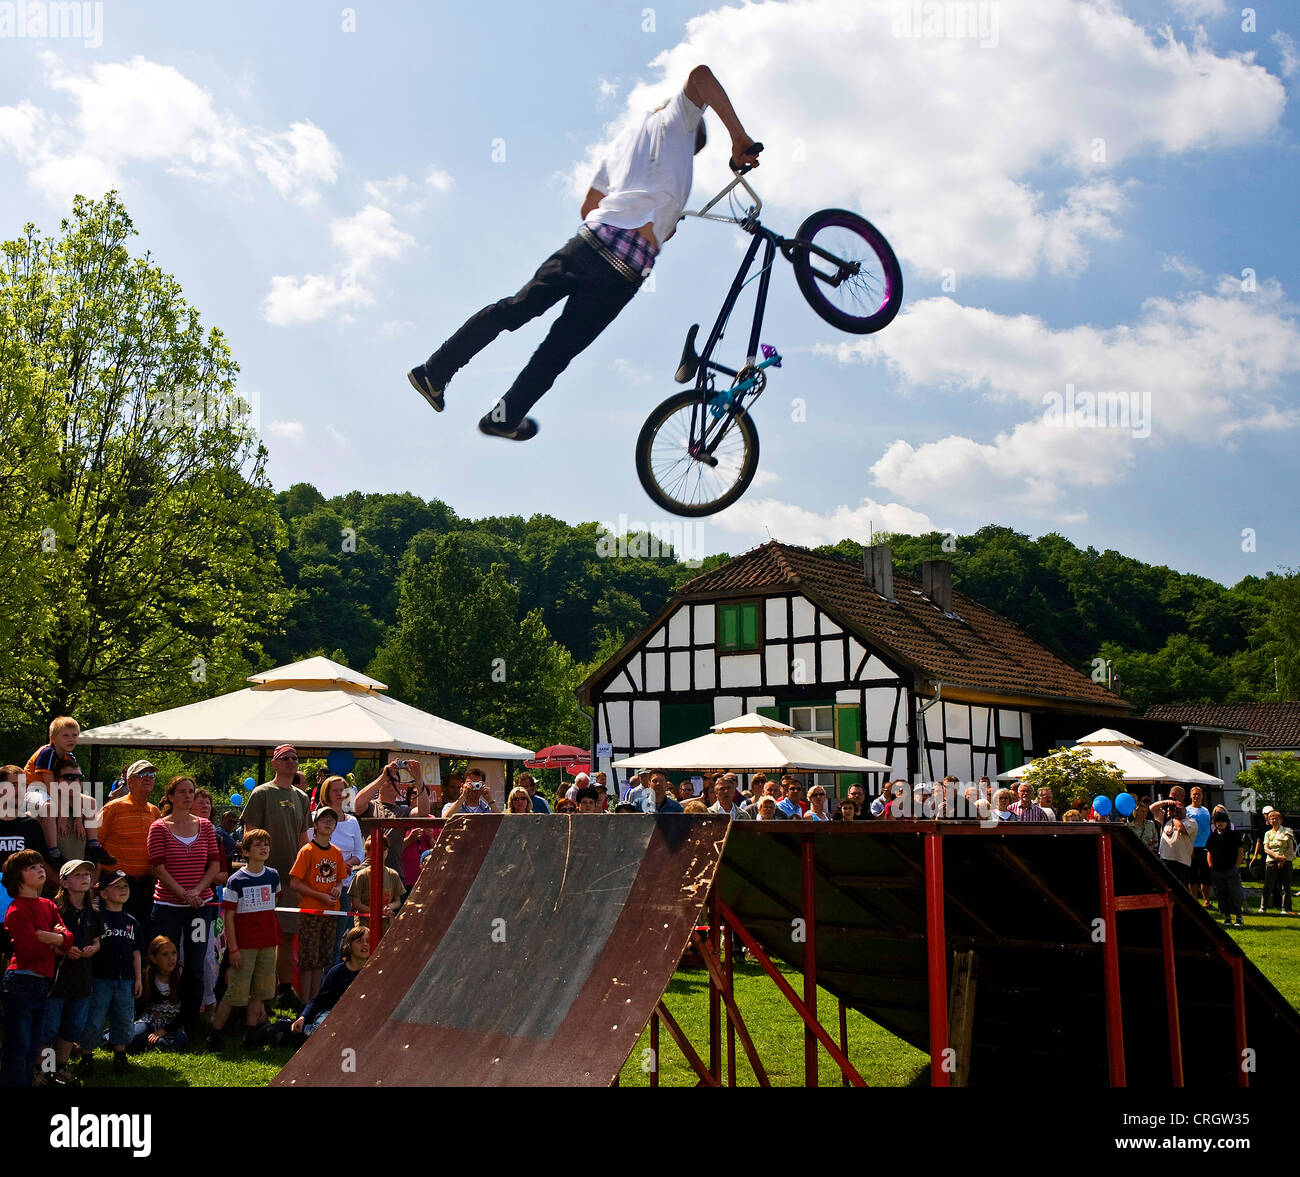 spektakuläre BMX-Fahrrad springen beim Fahrrad-Festival, Witten, Ruhrgebiet, Nordrhein-Westfalen, Deutschland Stockfoto